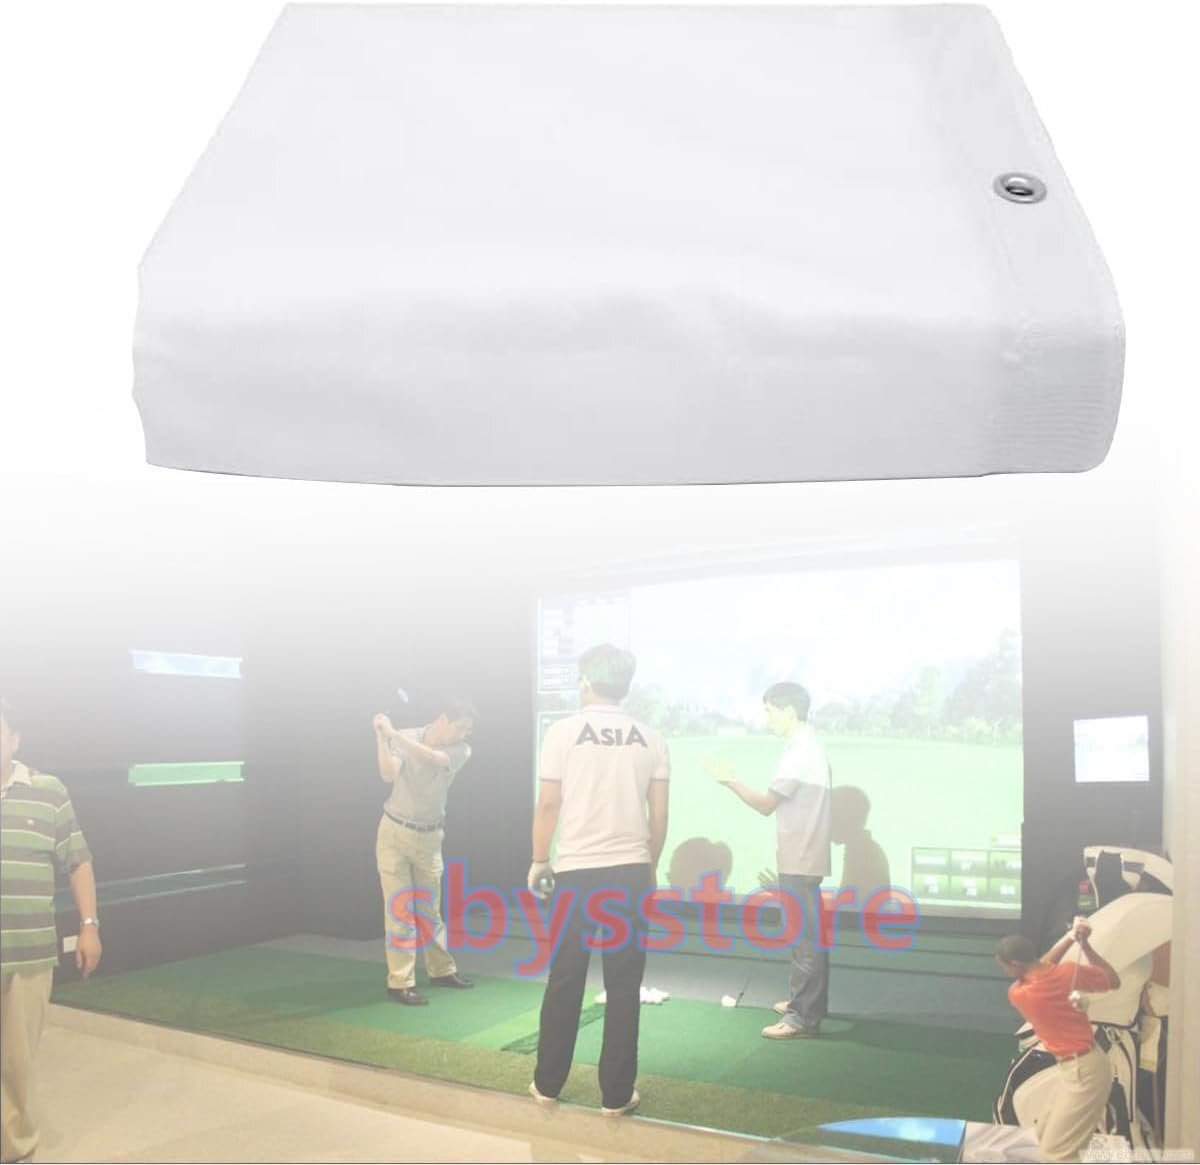 ホームビギナーズシリーズ用、特大、穴あき壁掛け、屋内ゴルフシミュレーターインパクトスクリーン 3*3m_画像1